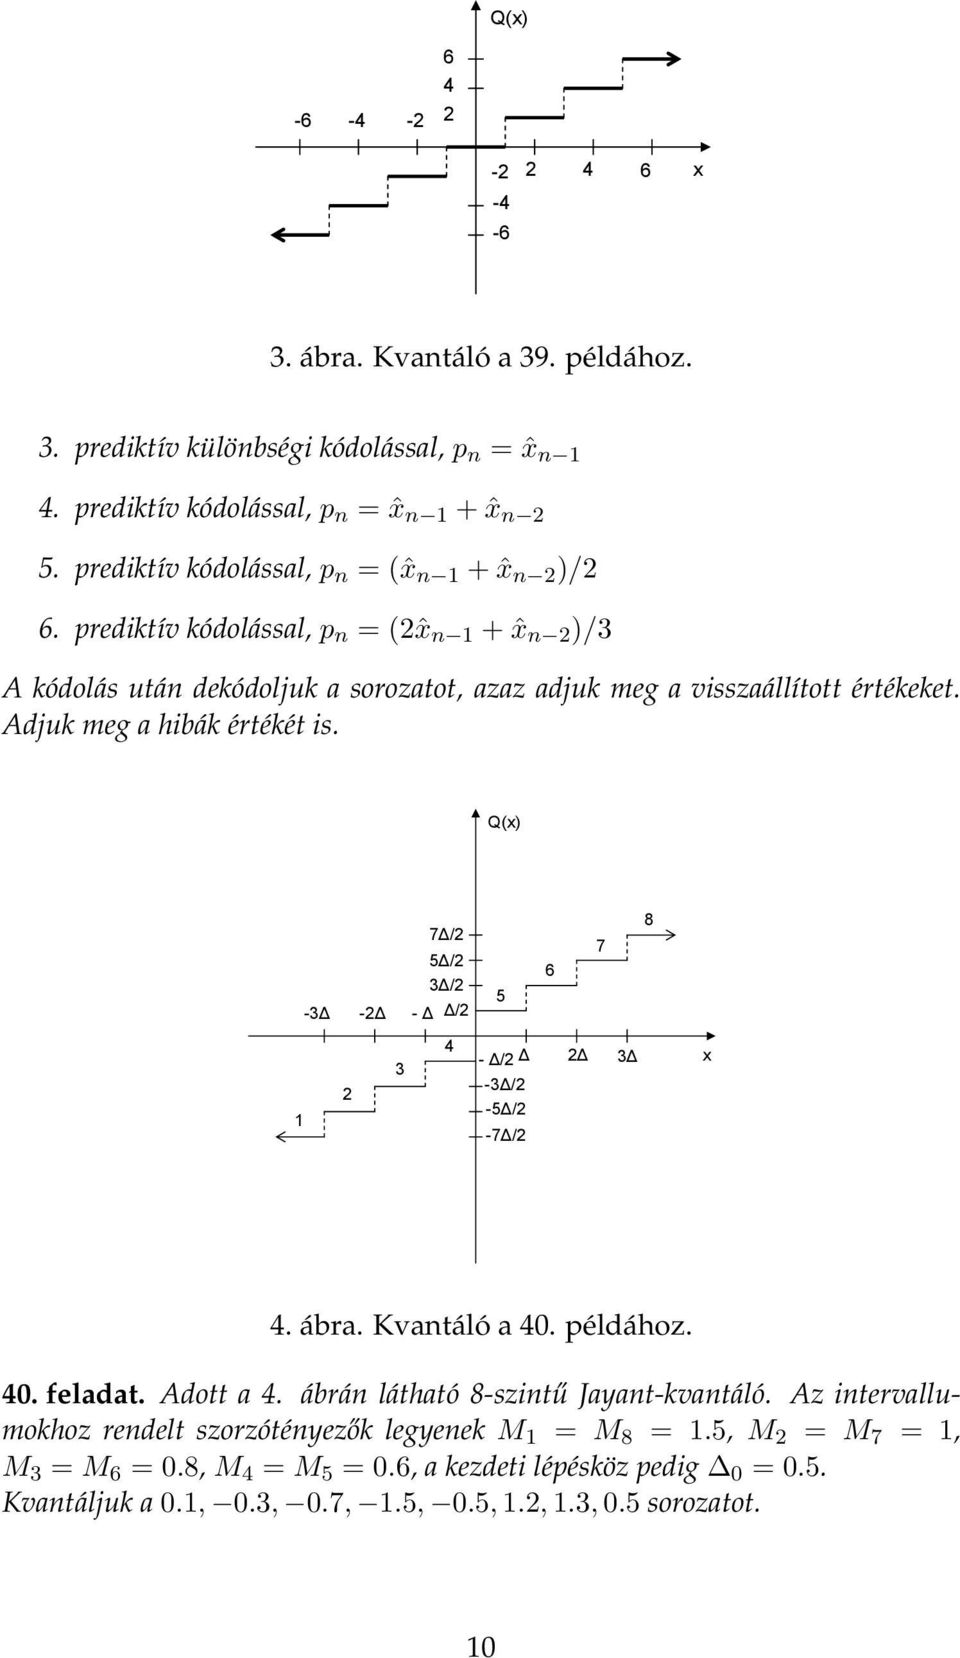 rediktív kódolással, n = (ˆx n + ˆx n )/3 x 6 x y 4 A kódolás után dekódoljuk a sorozatot, azaz adjuk meg a visszaállított értékeket. 4 Adjuk meg a hibák értékét is.